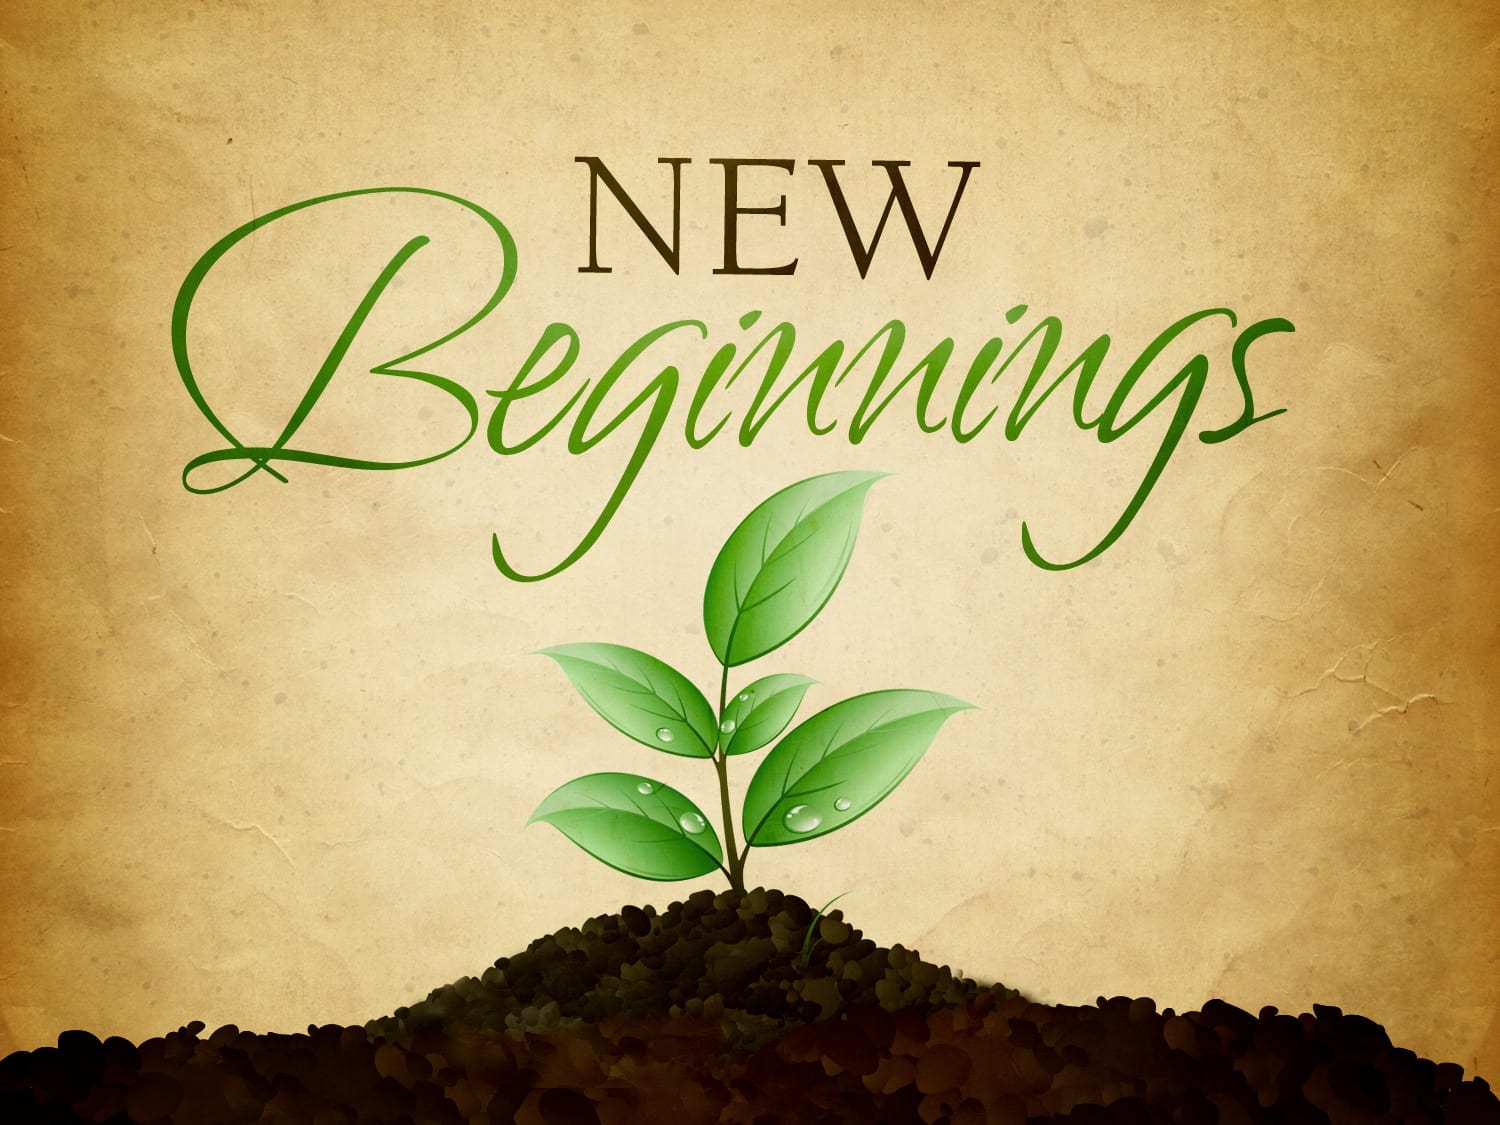 A New Start Concept of a New Beginning